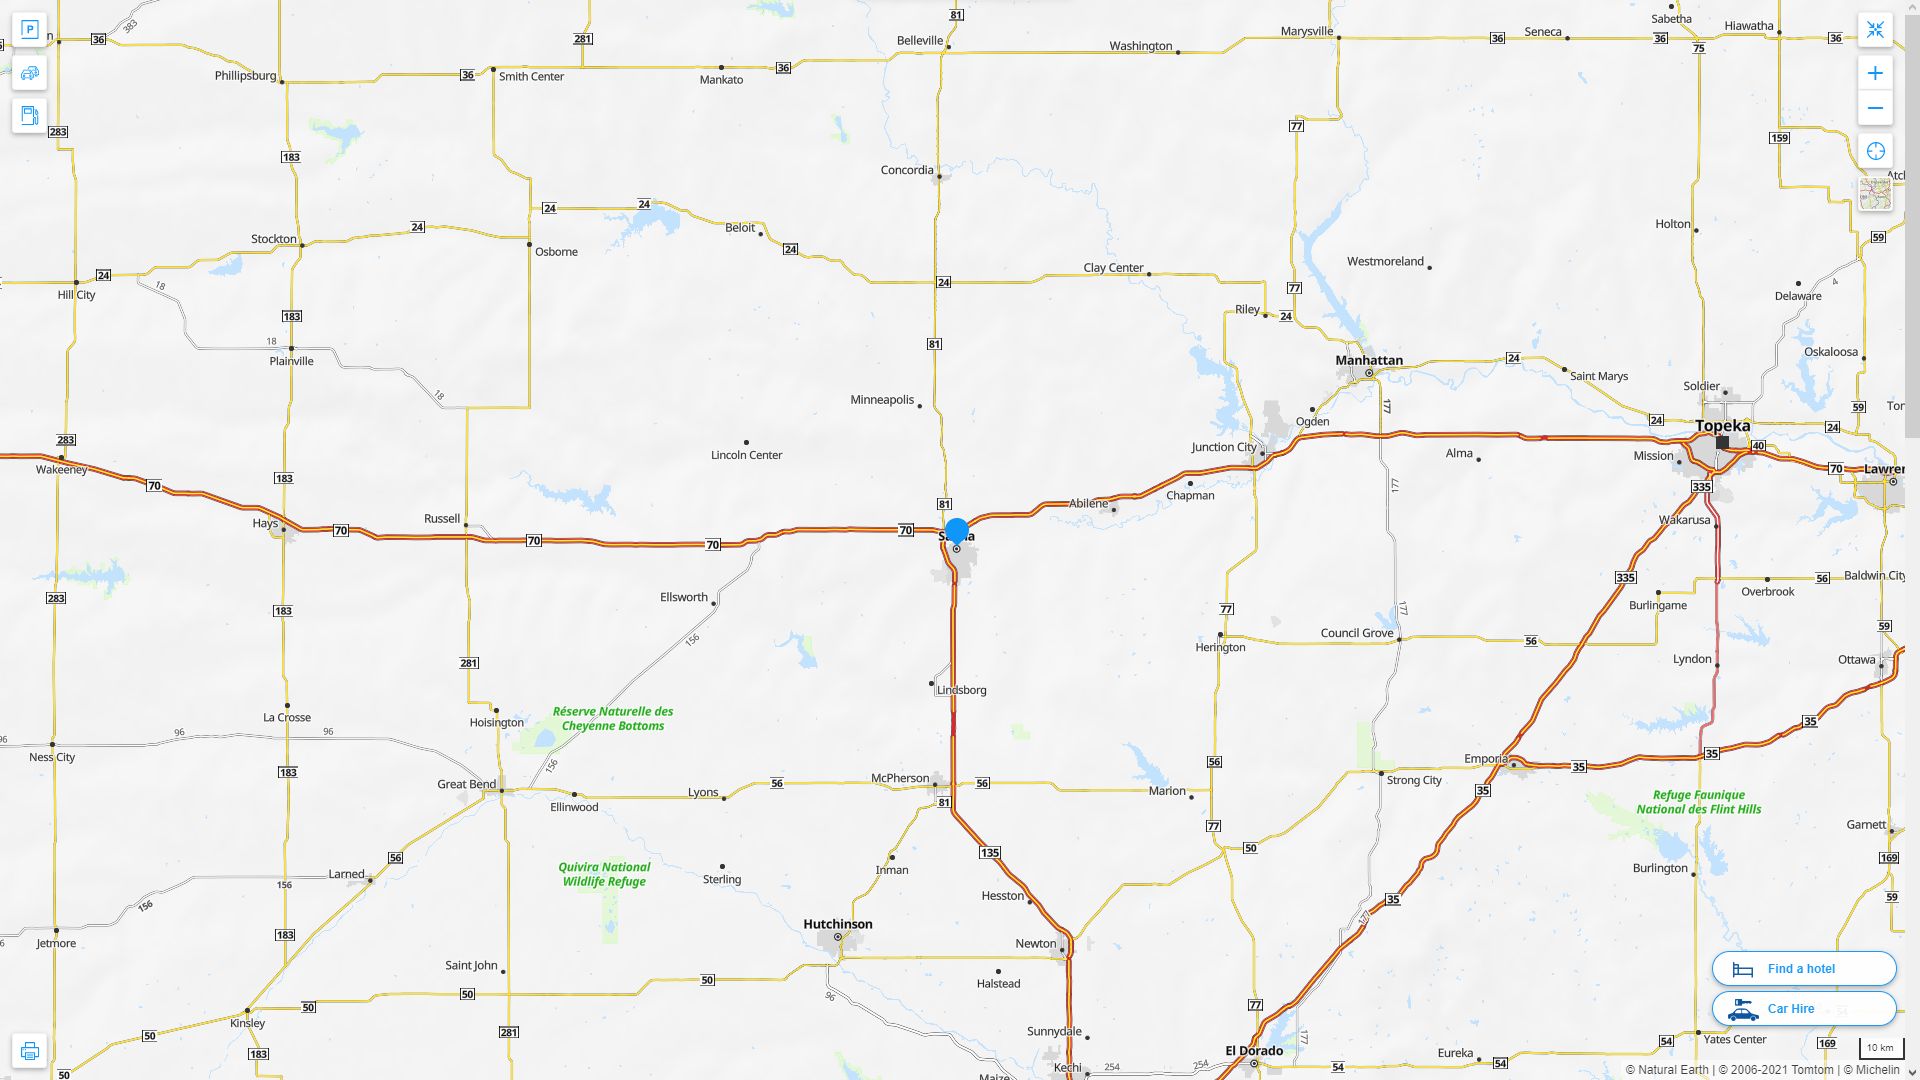 Salina Kansas Highway and Road Map